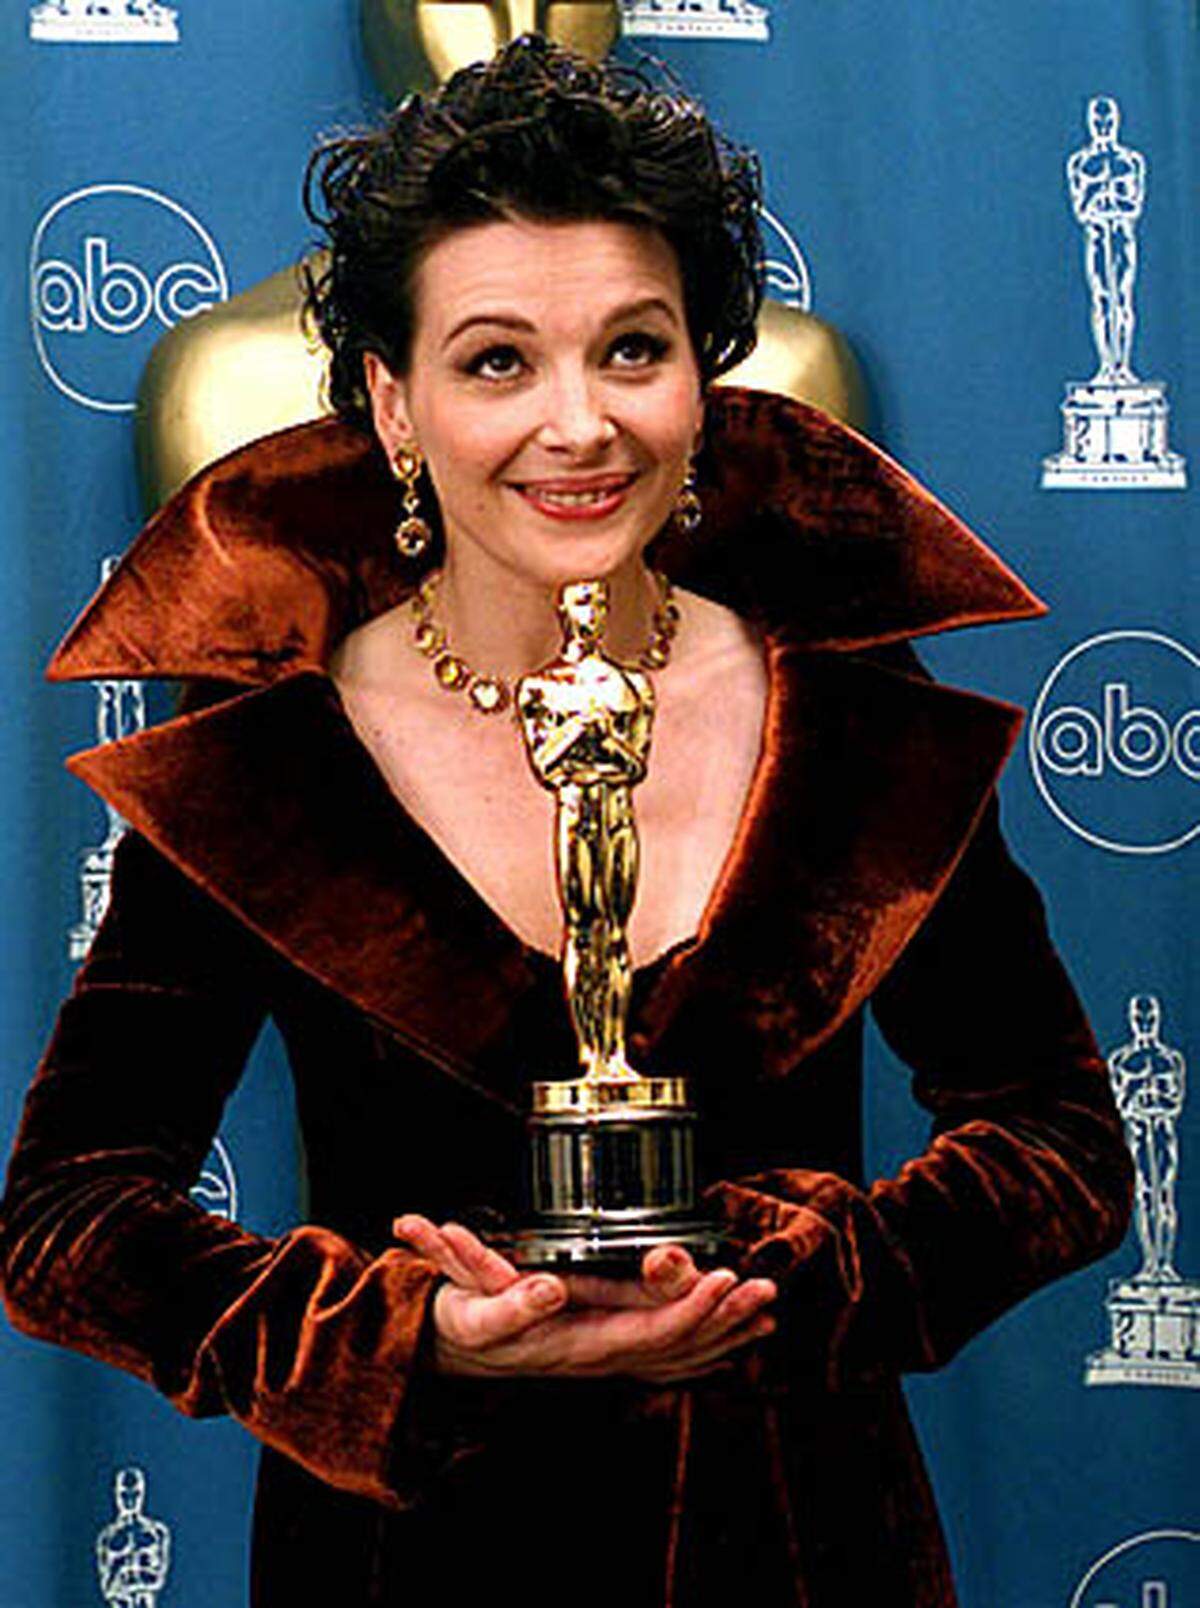 Juliette Binoche holte sich 1997 einen Oscar. Nein, nicht für "Dracula", sondern als Beste Nebendarstellerin für "Der Englische Patient".